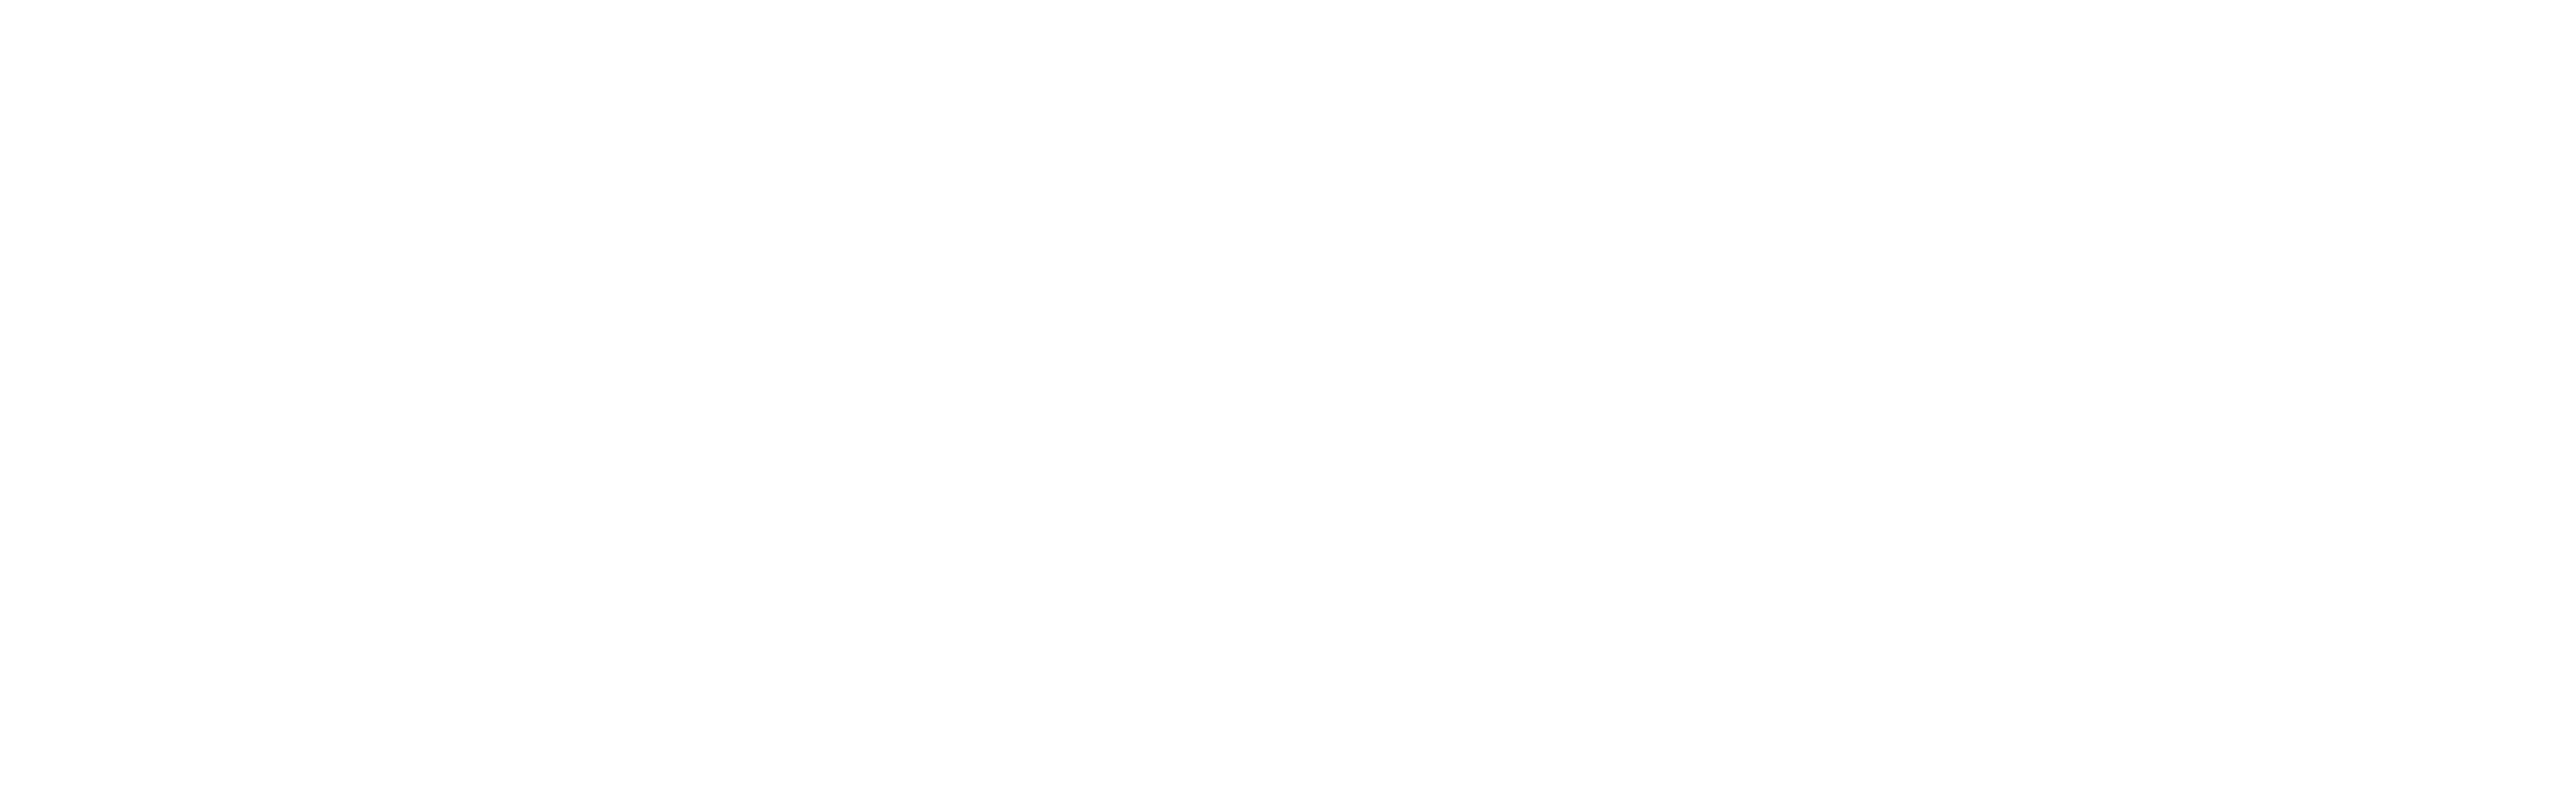 Bruins Golf Cart, Meet & Greet w/ Bobby Orr & Bruins Tickets logo image